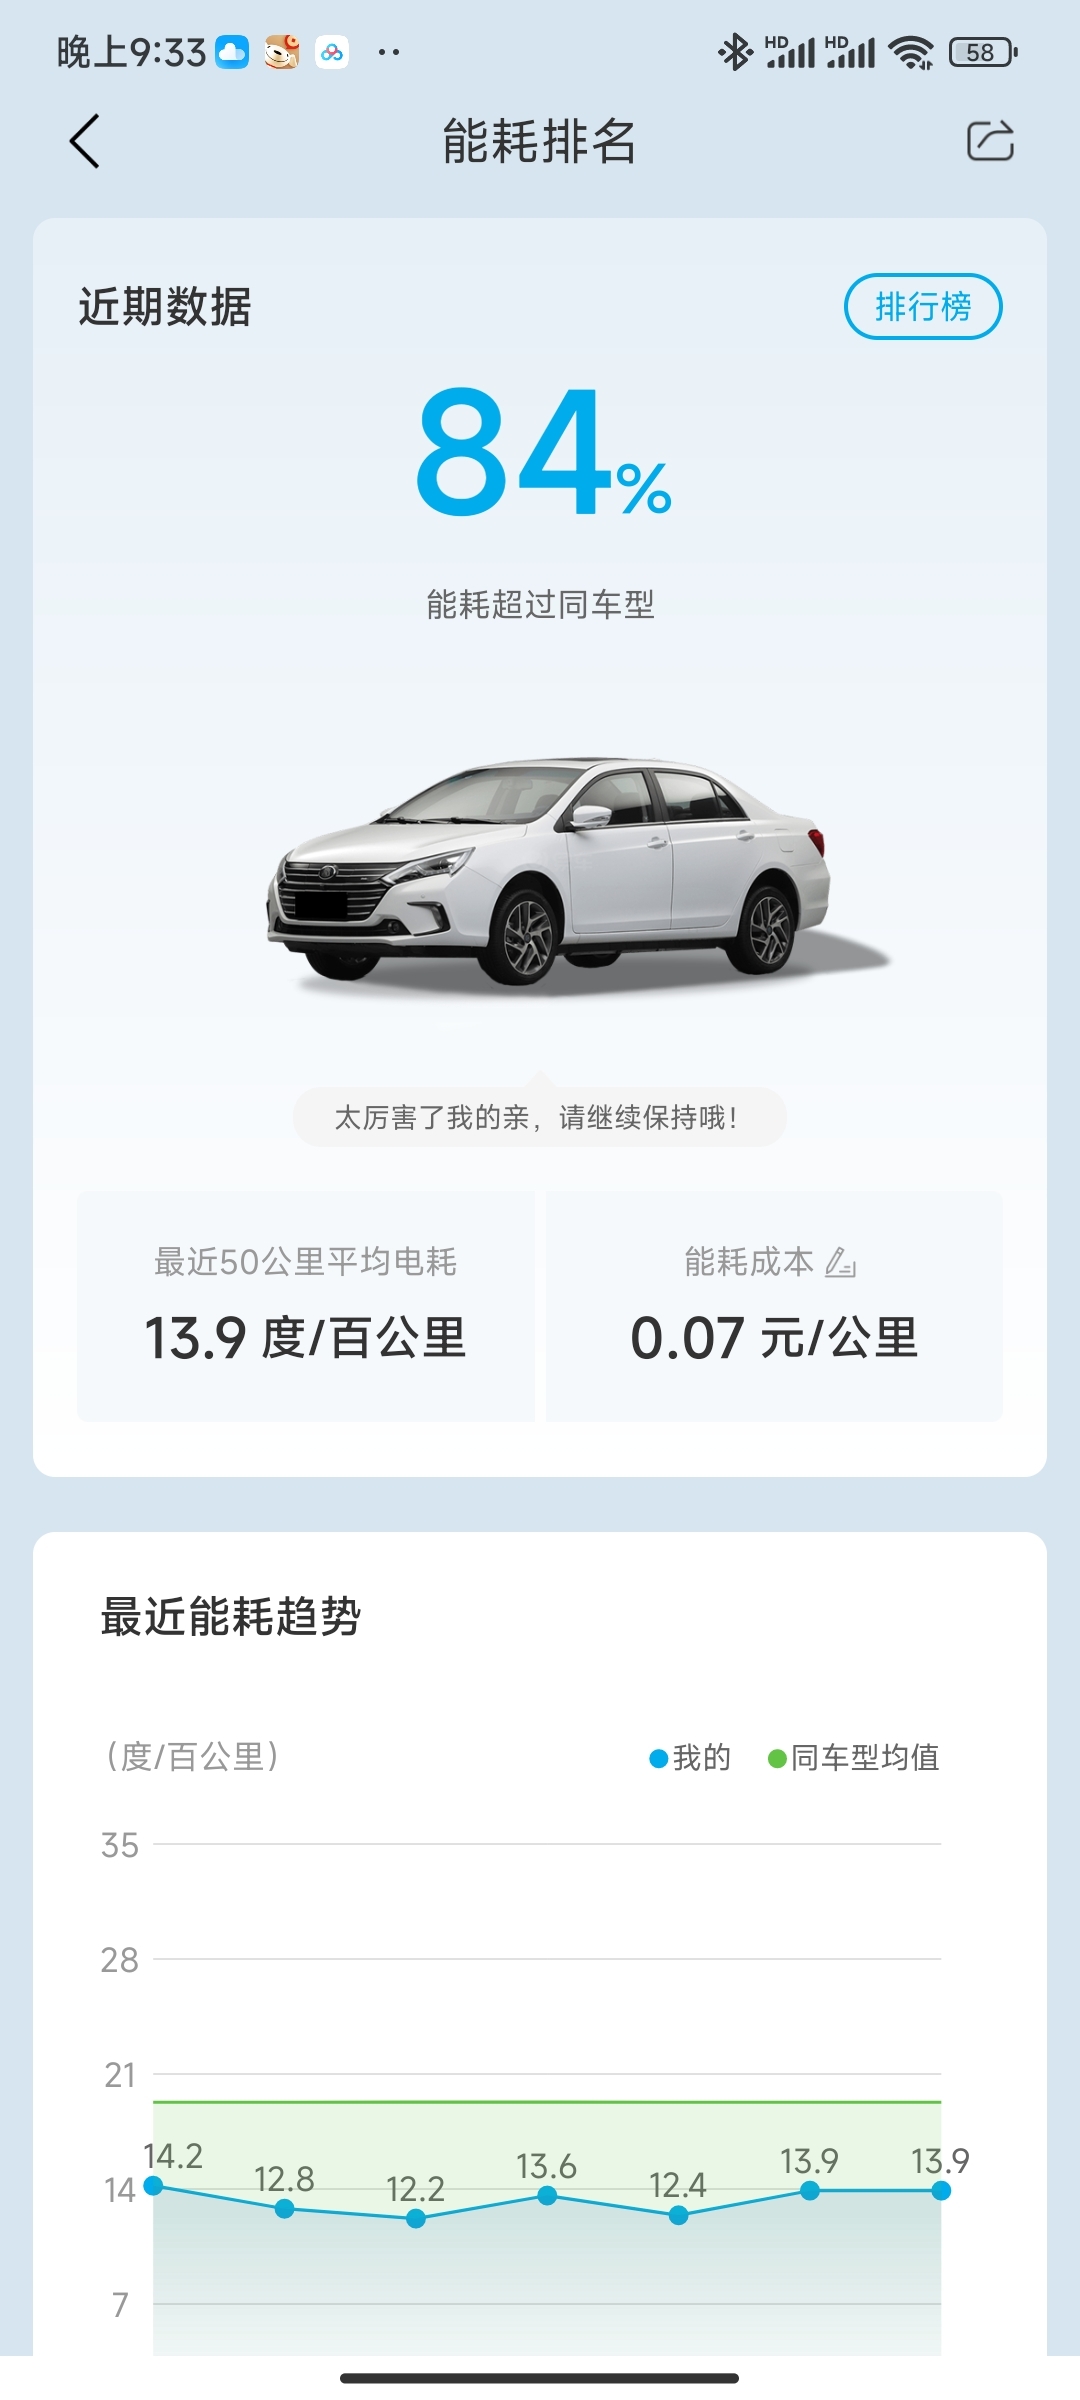 晒能耗啦
车型：秦ev450高配版
城市：北京
温度:30度
天气：晴
平均能耗：13.9kWh
总结：日常通勤，动能回收最大。